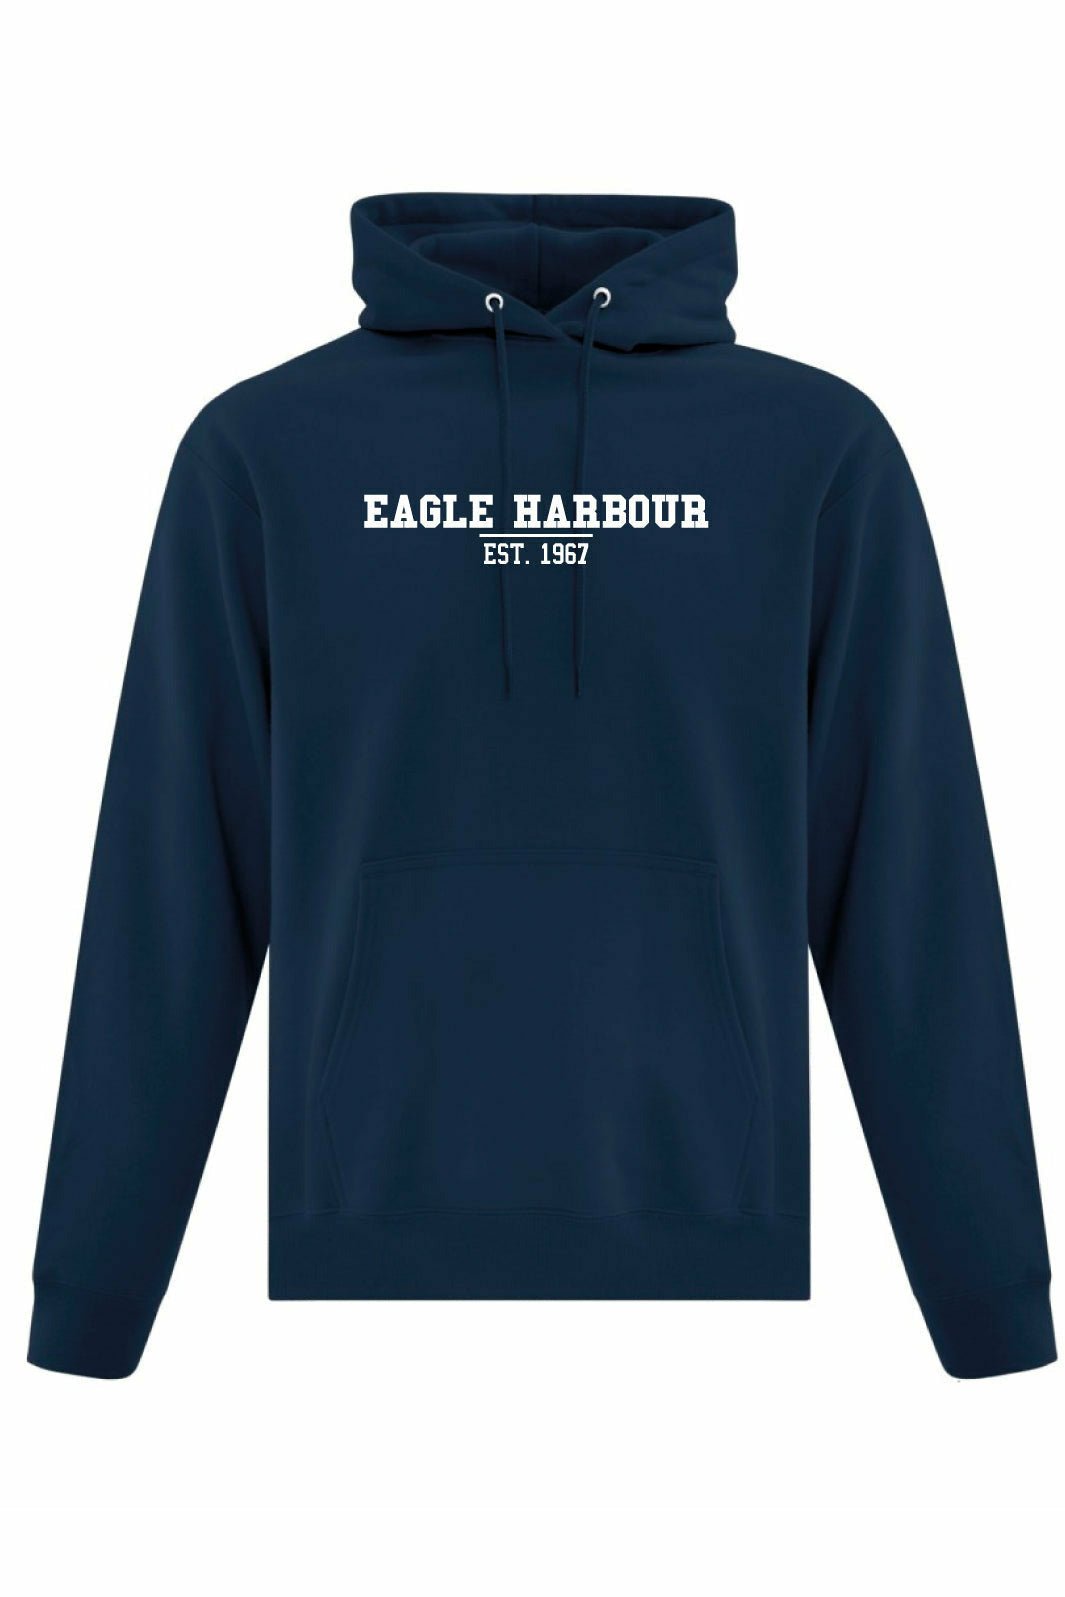 Eagle Harbour EST Pullover Hoodie (Adult) - Oddball Workshop